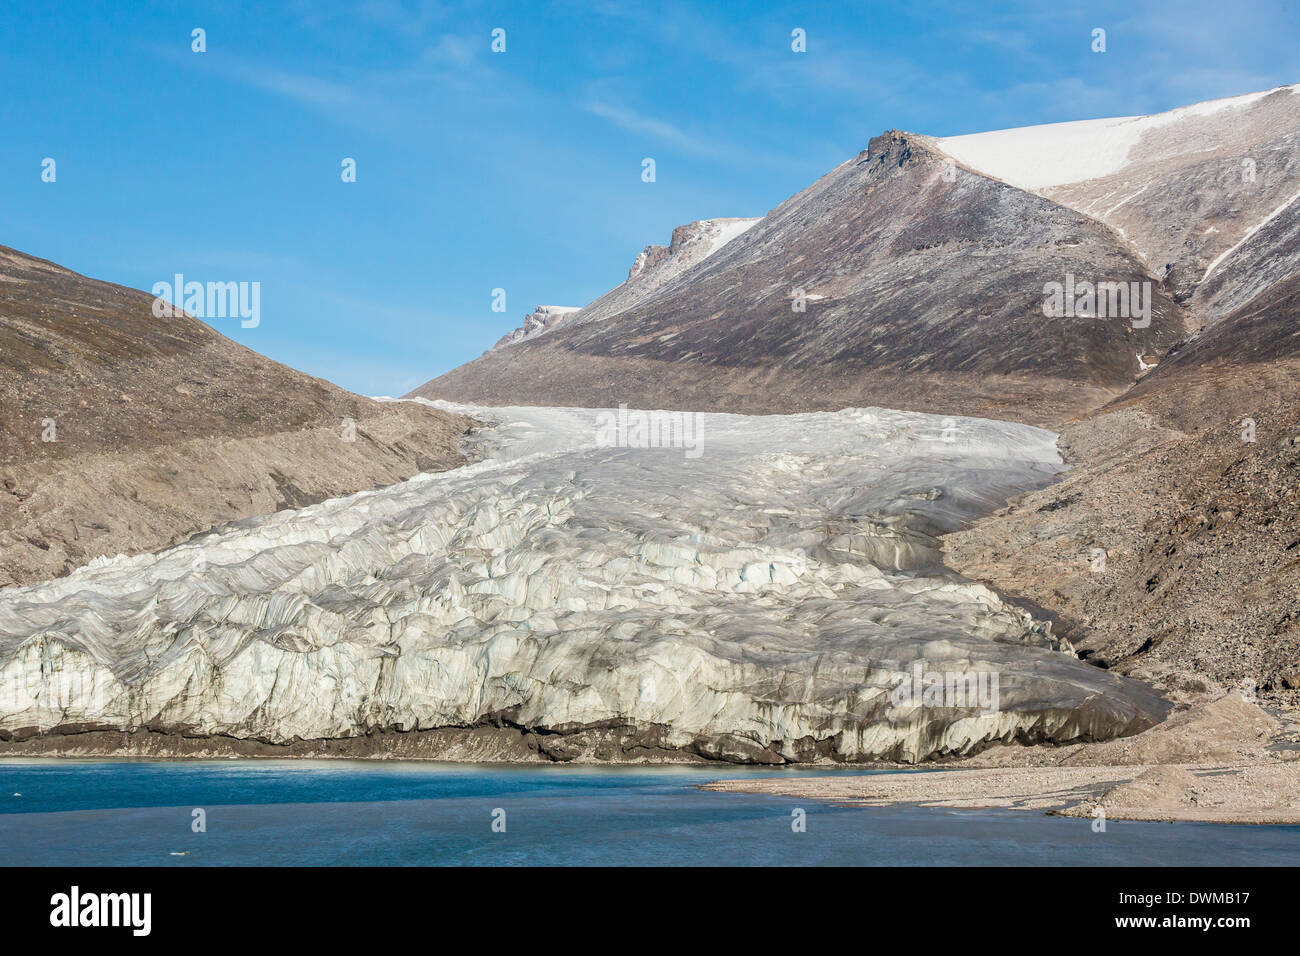 Cime innevate e ghiacciai in braccio ghiacciato, Isola Baffin, Nunavut, Canada, America del Nord Foto Stock